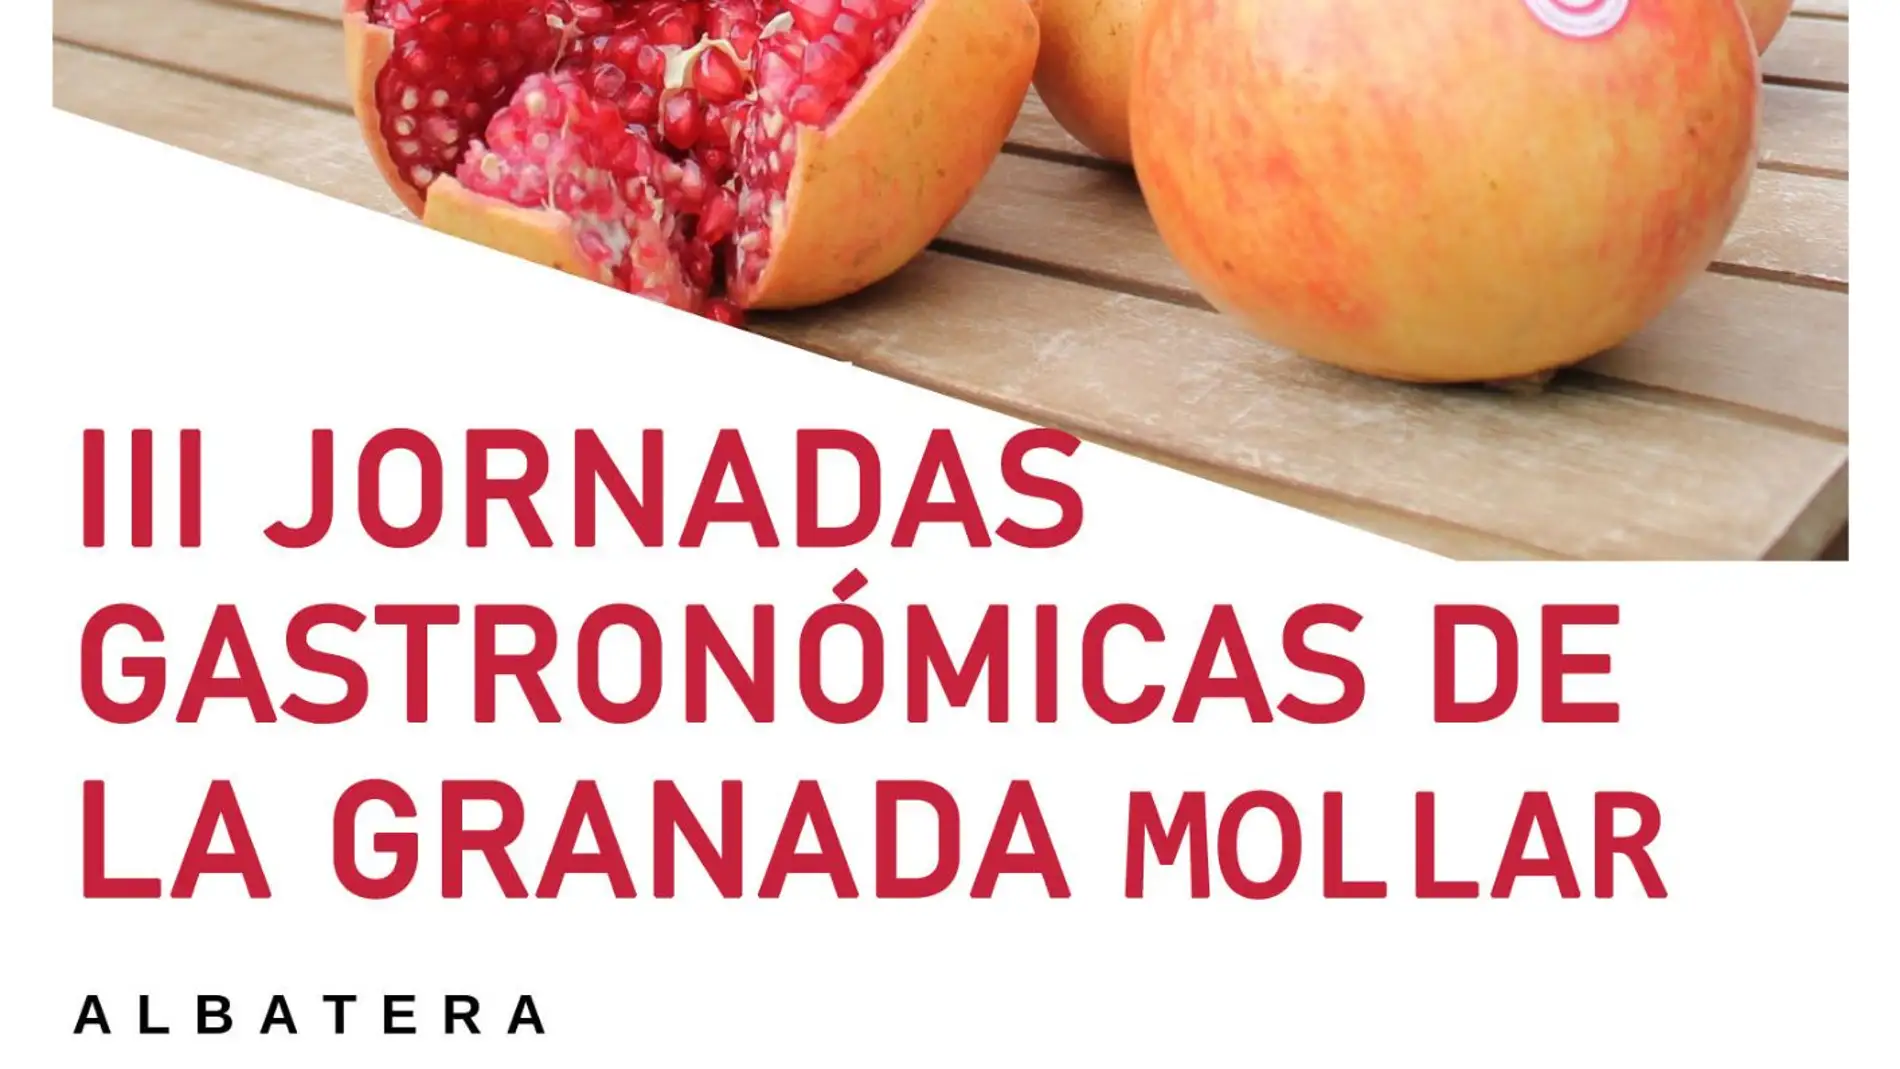 Turismo presenta las III Jornadas Gastronómi-cas de la Ganada Mollar en Albatera 